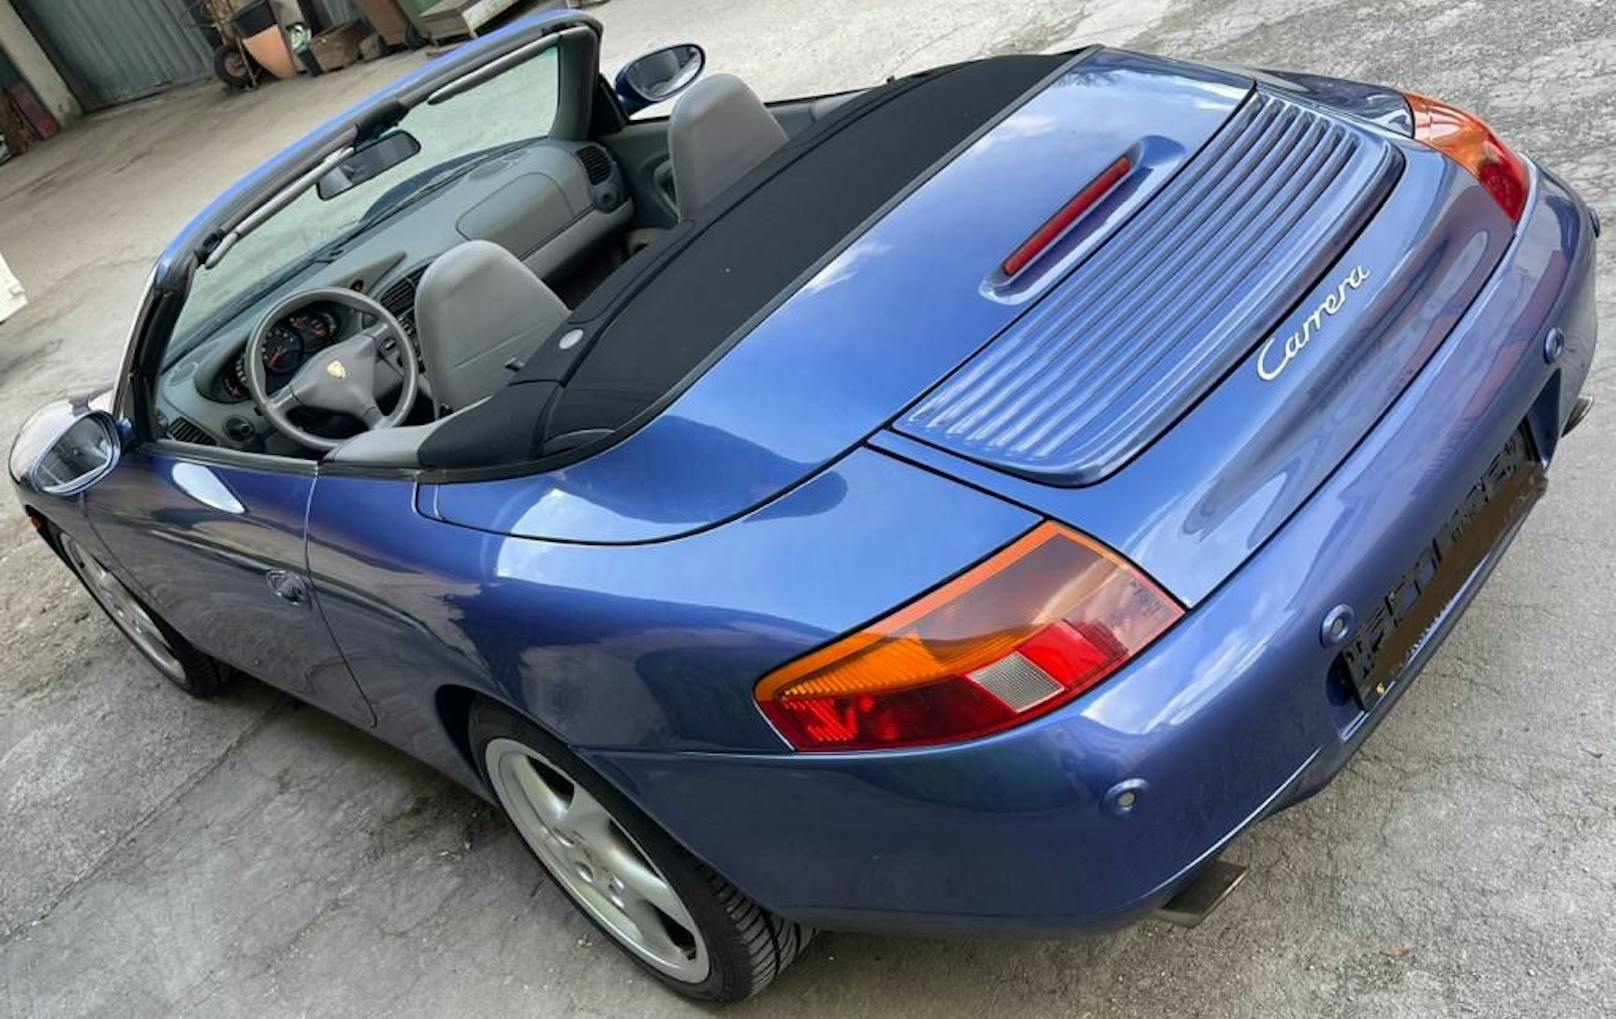 Der blau-metallisch lackierte Flitzer erhielt wegen der ungewöhnlichen Form seiner Scheinwerfer den Spitznamen "Spiegelei-Porsche".